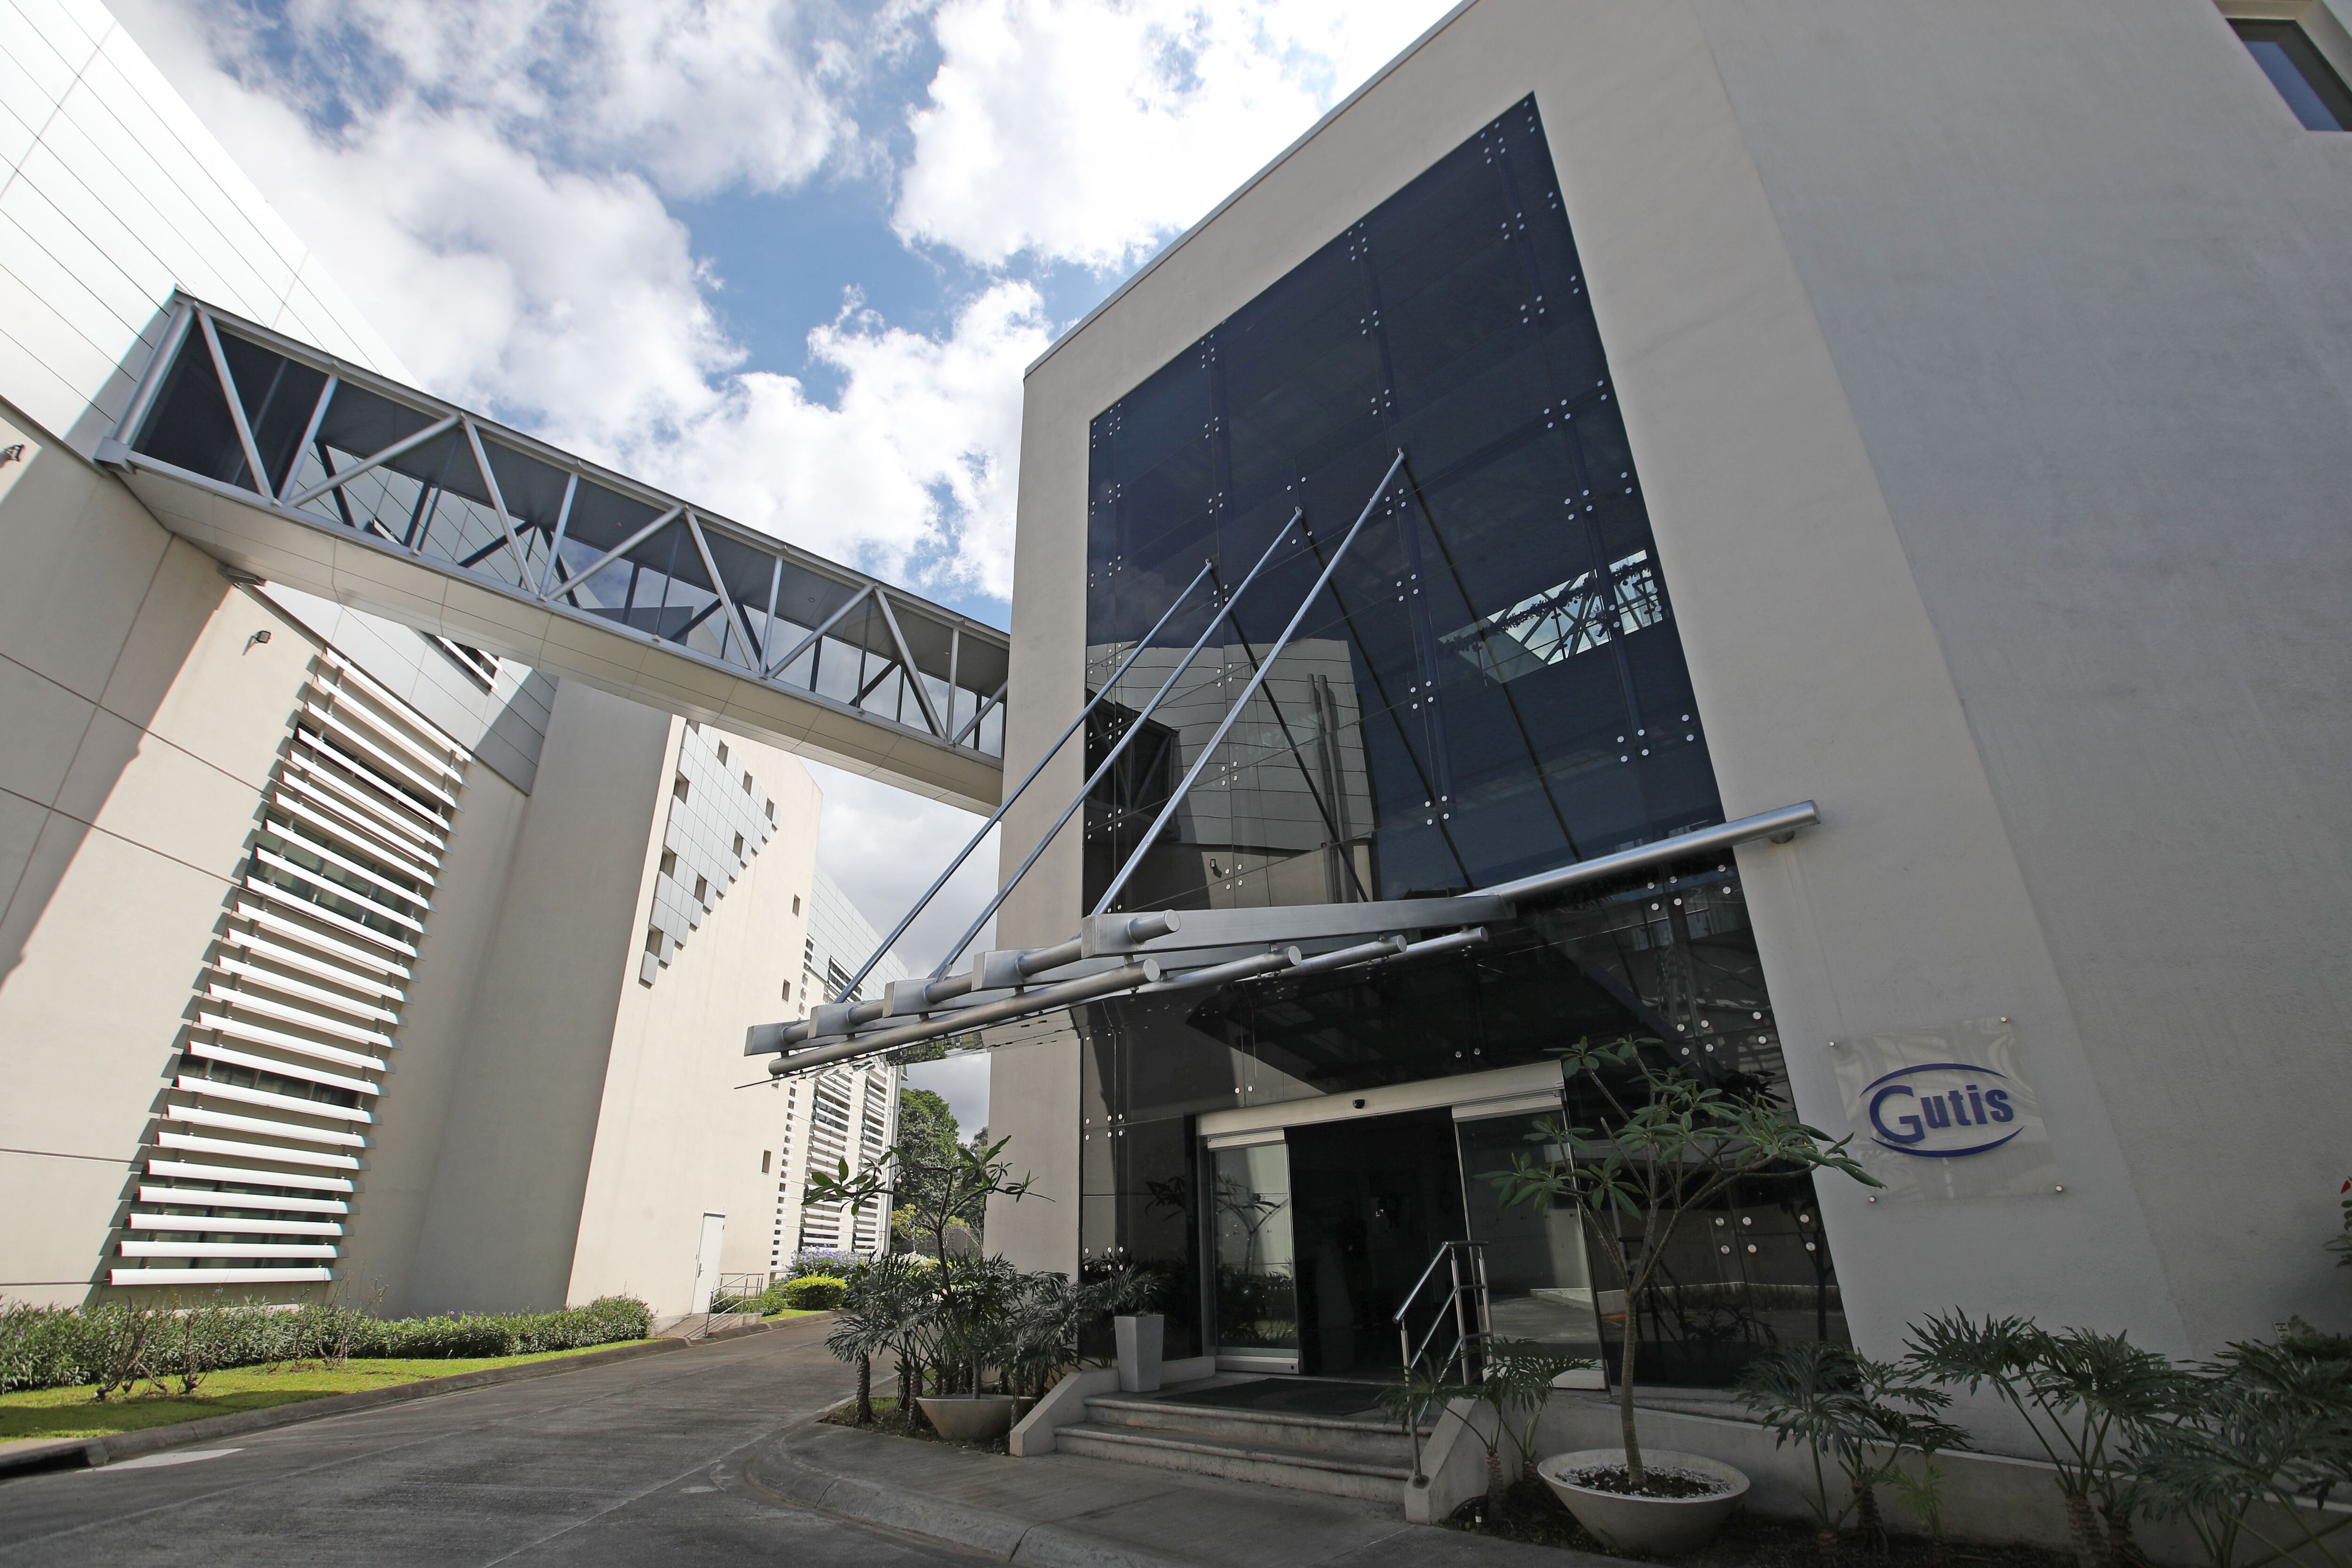 La farmacéutica Gutis, con 60 años en el mercado, opera en una planta ubicada de la zona industrial de Pavas. La compañía anunció la construcción de un nuevo plantel de 34.000 metros cuadrados y la apertura de 150 plazas una vez que entre en operación.
